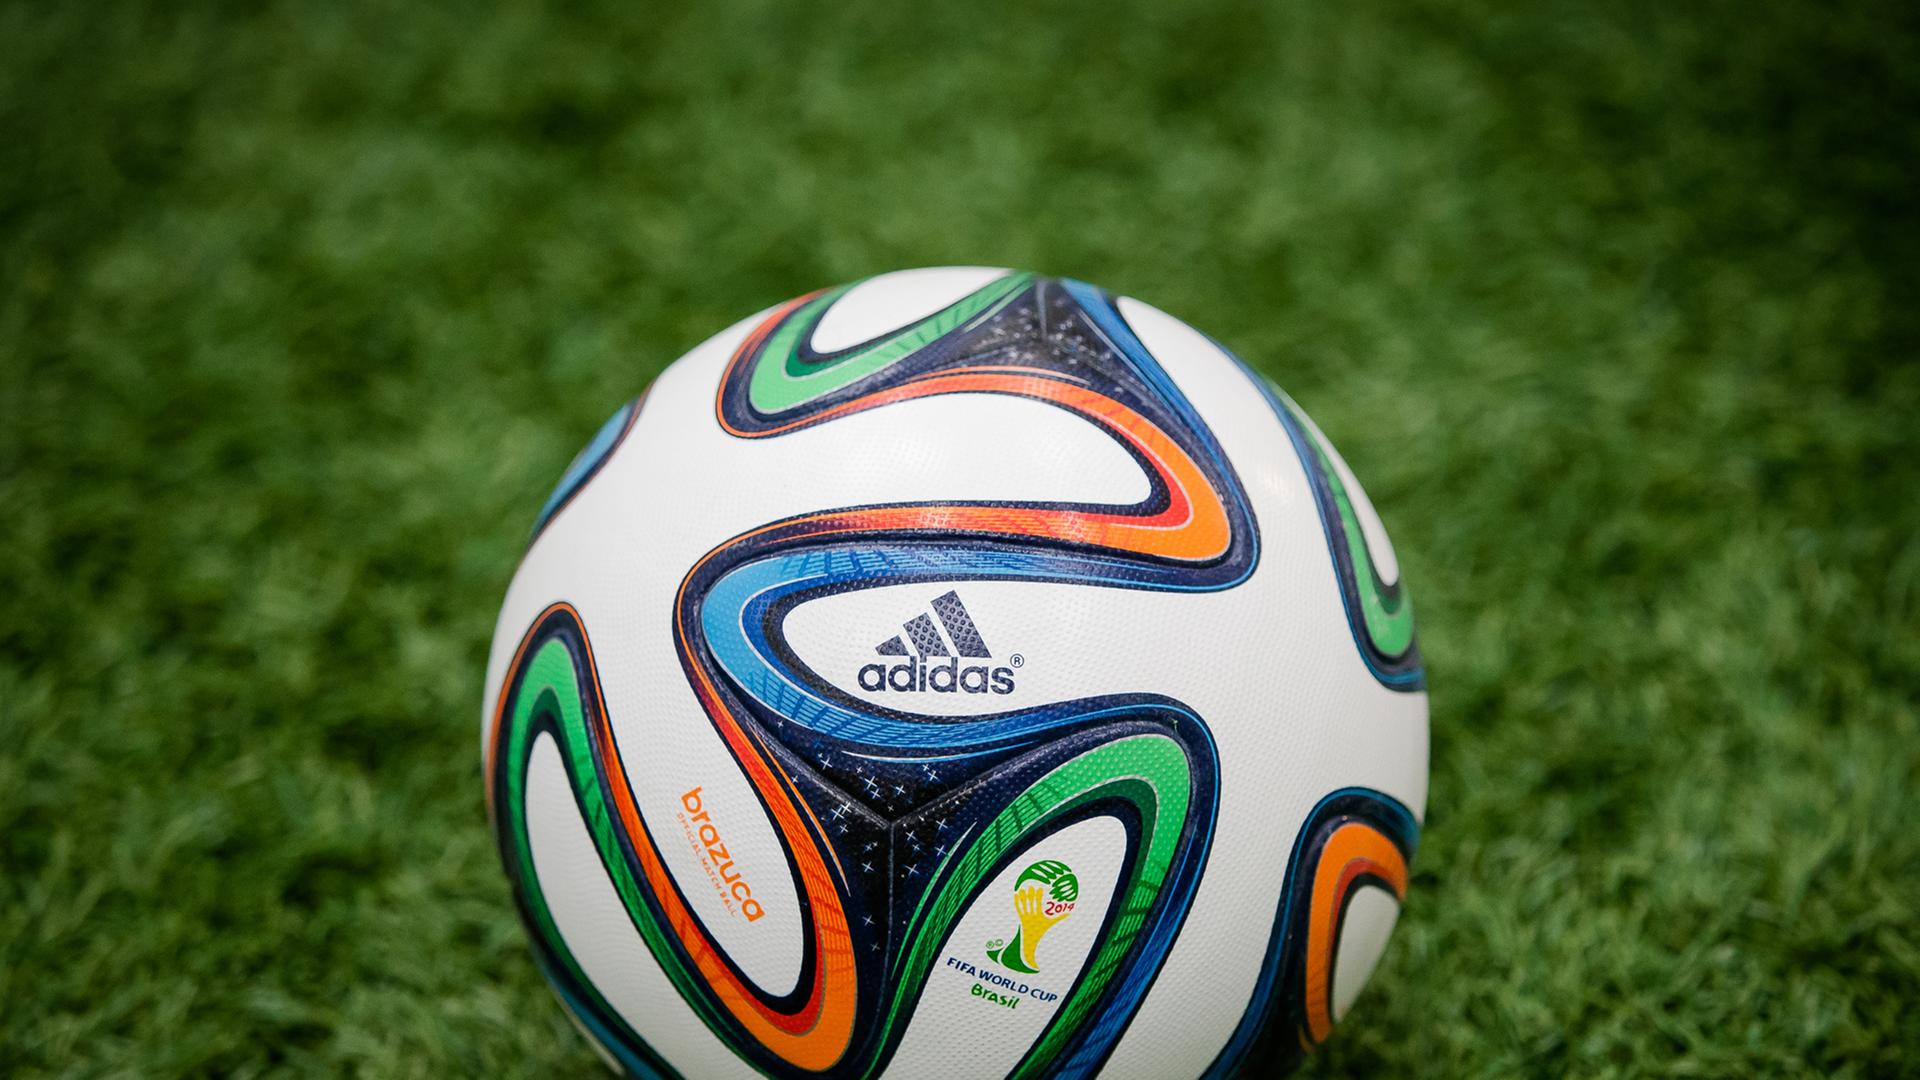 "Brazuca" heißt der Spielball für die Fußball-WM 2014 in Brasilien